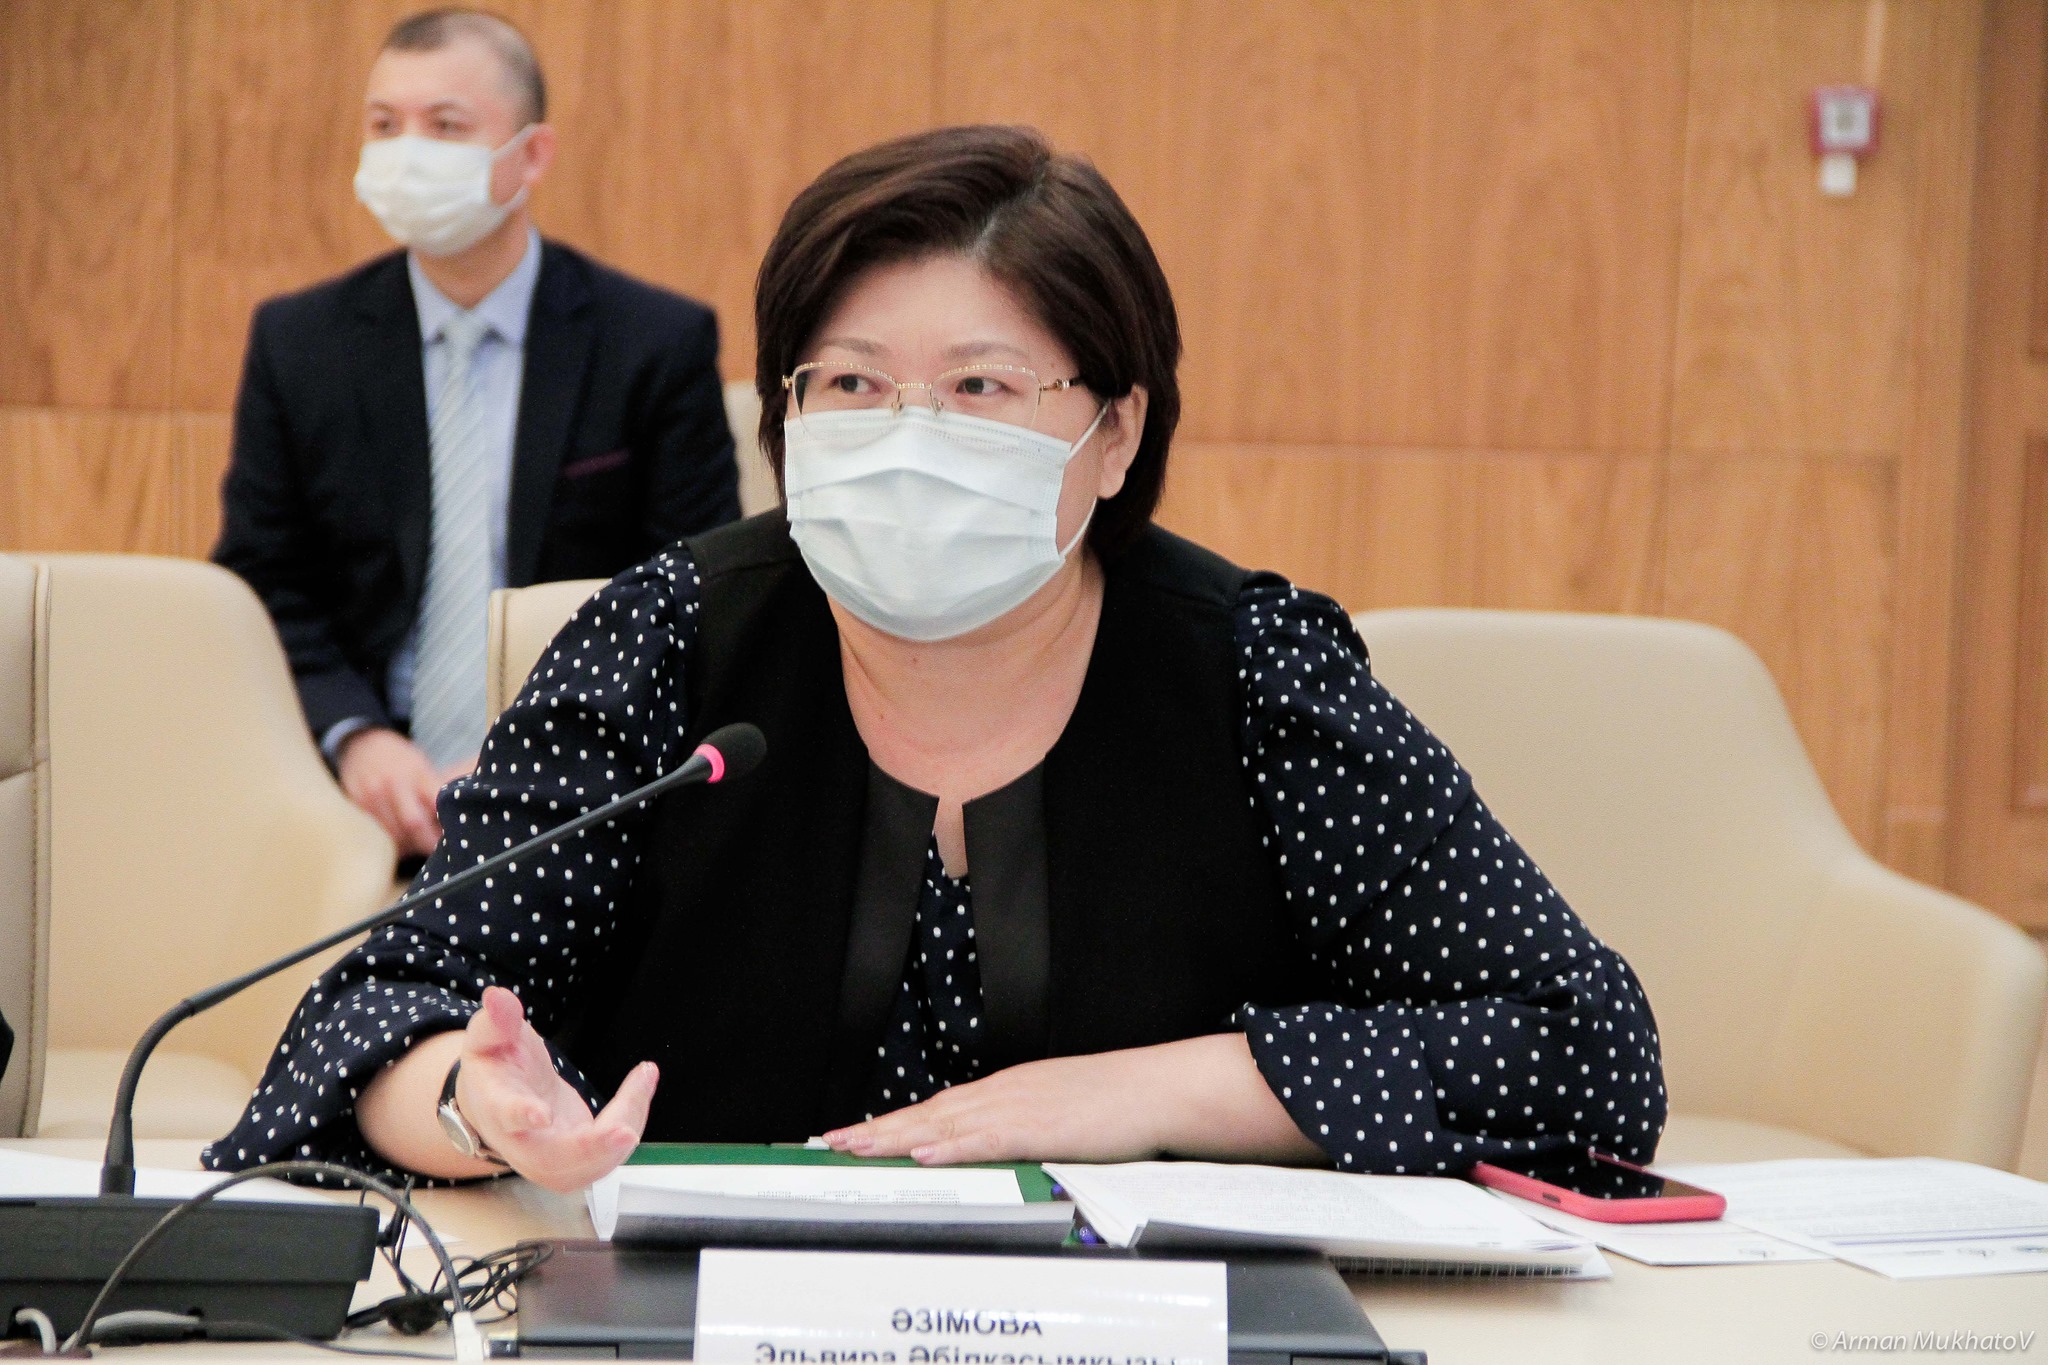 Эльвира Әзімова ҚР ОСК жанындағы жұмыс тобының онлайн-отырысына қатысты